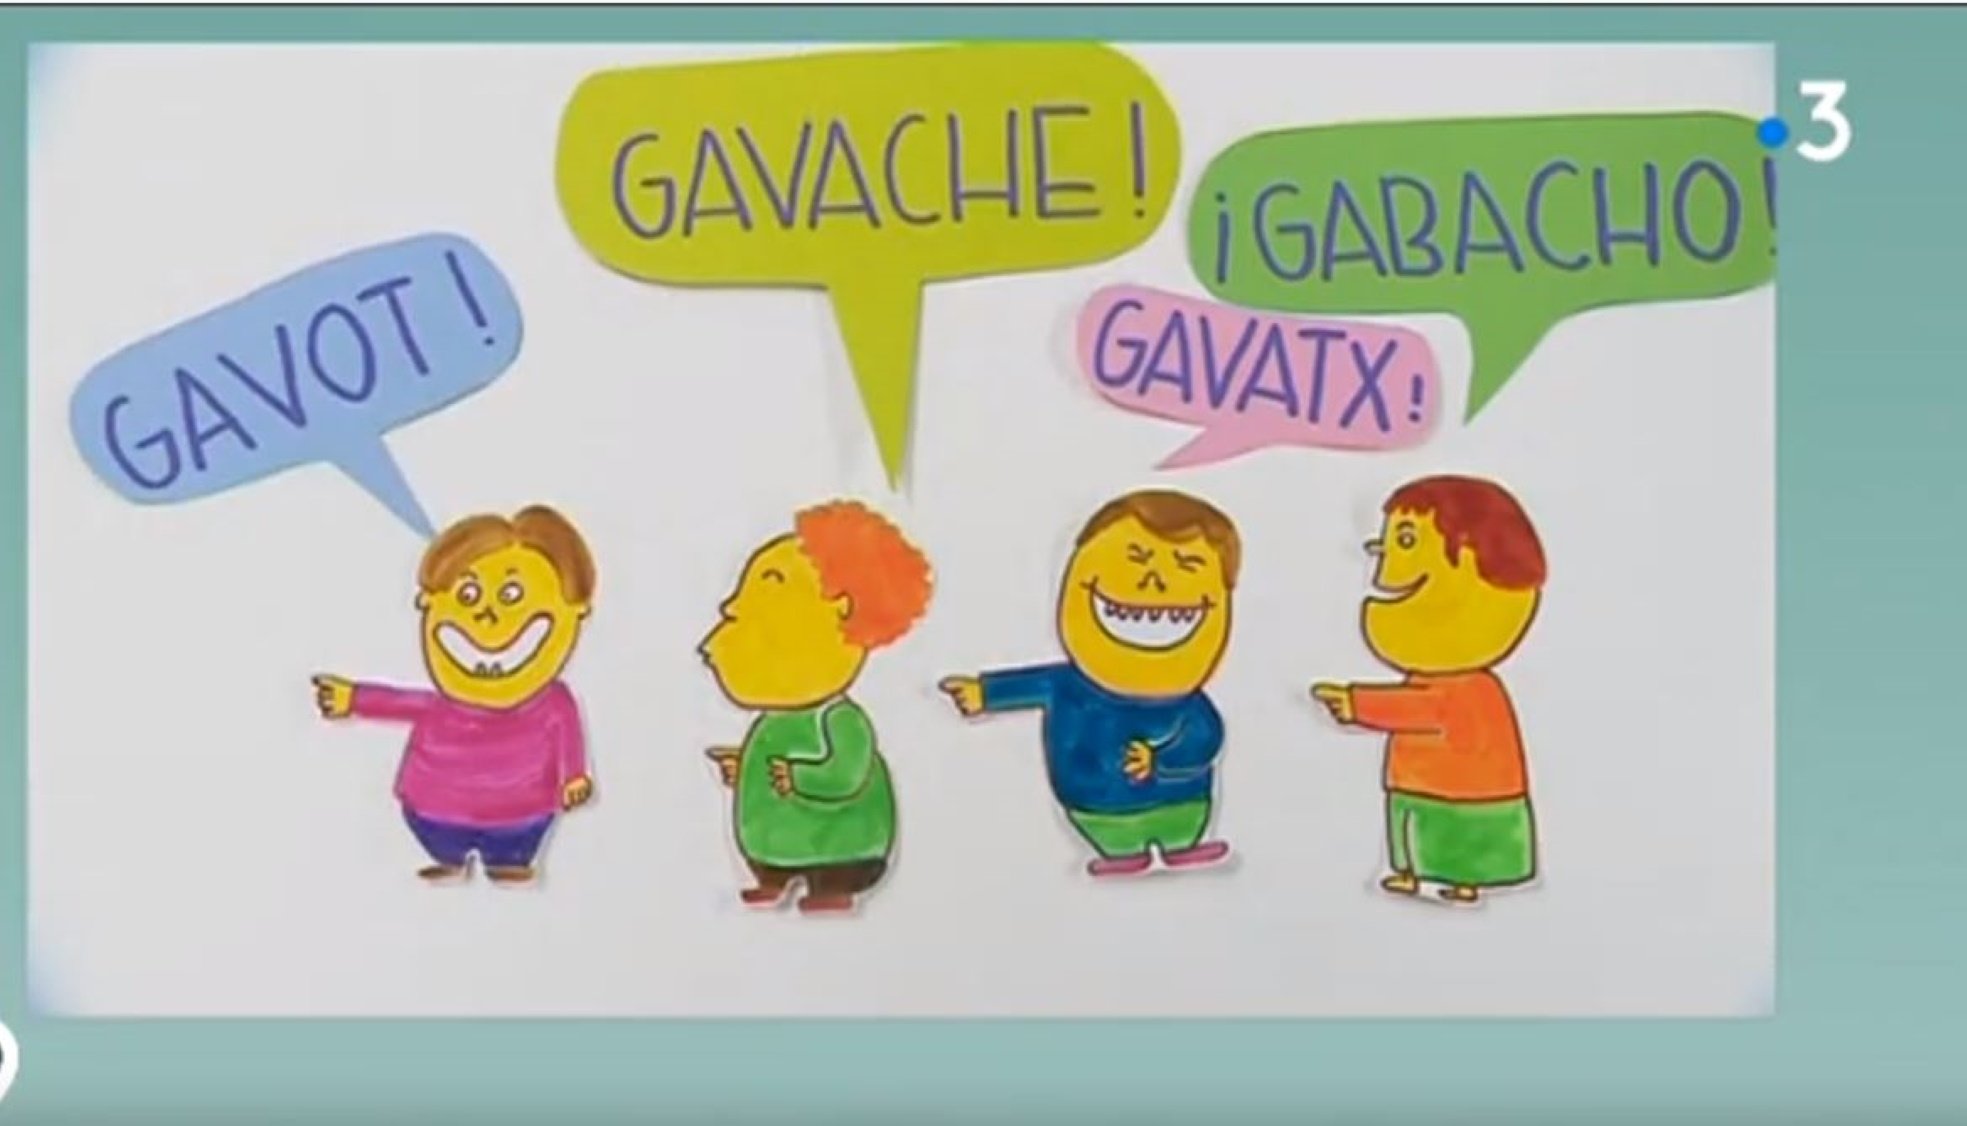 D'aquí ve l'expressió catalana "gavatx" per definir els francesos, segons France3